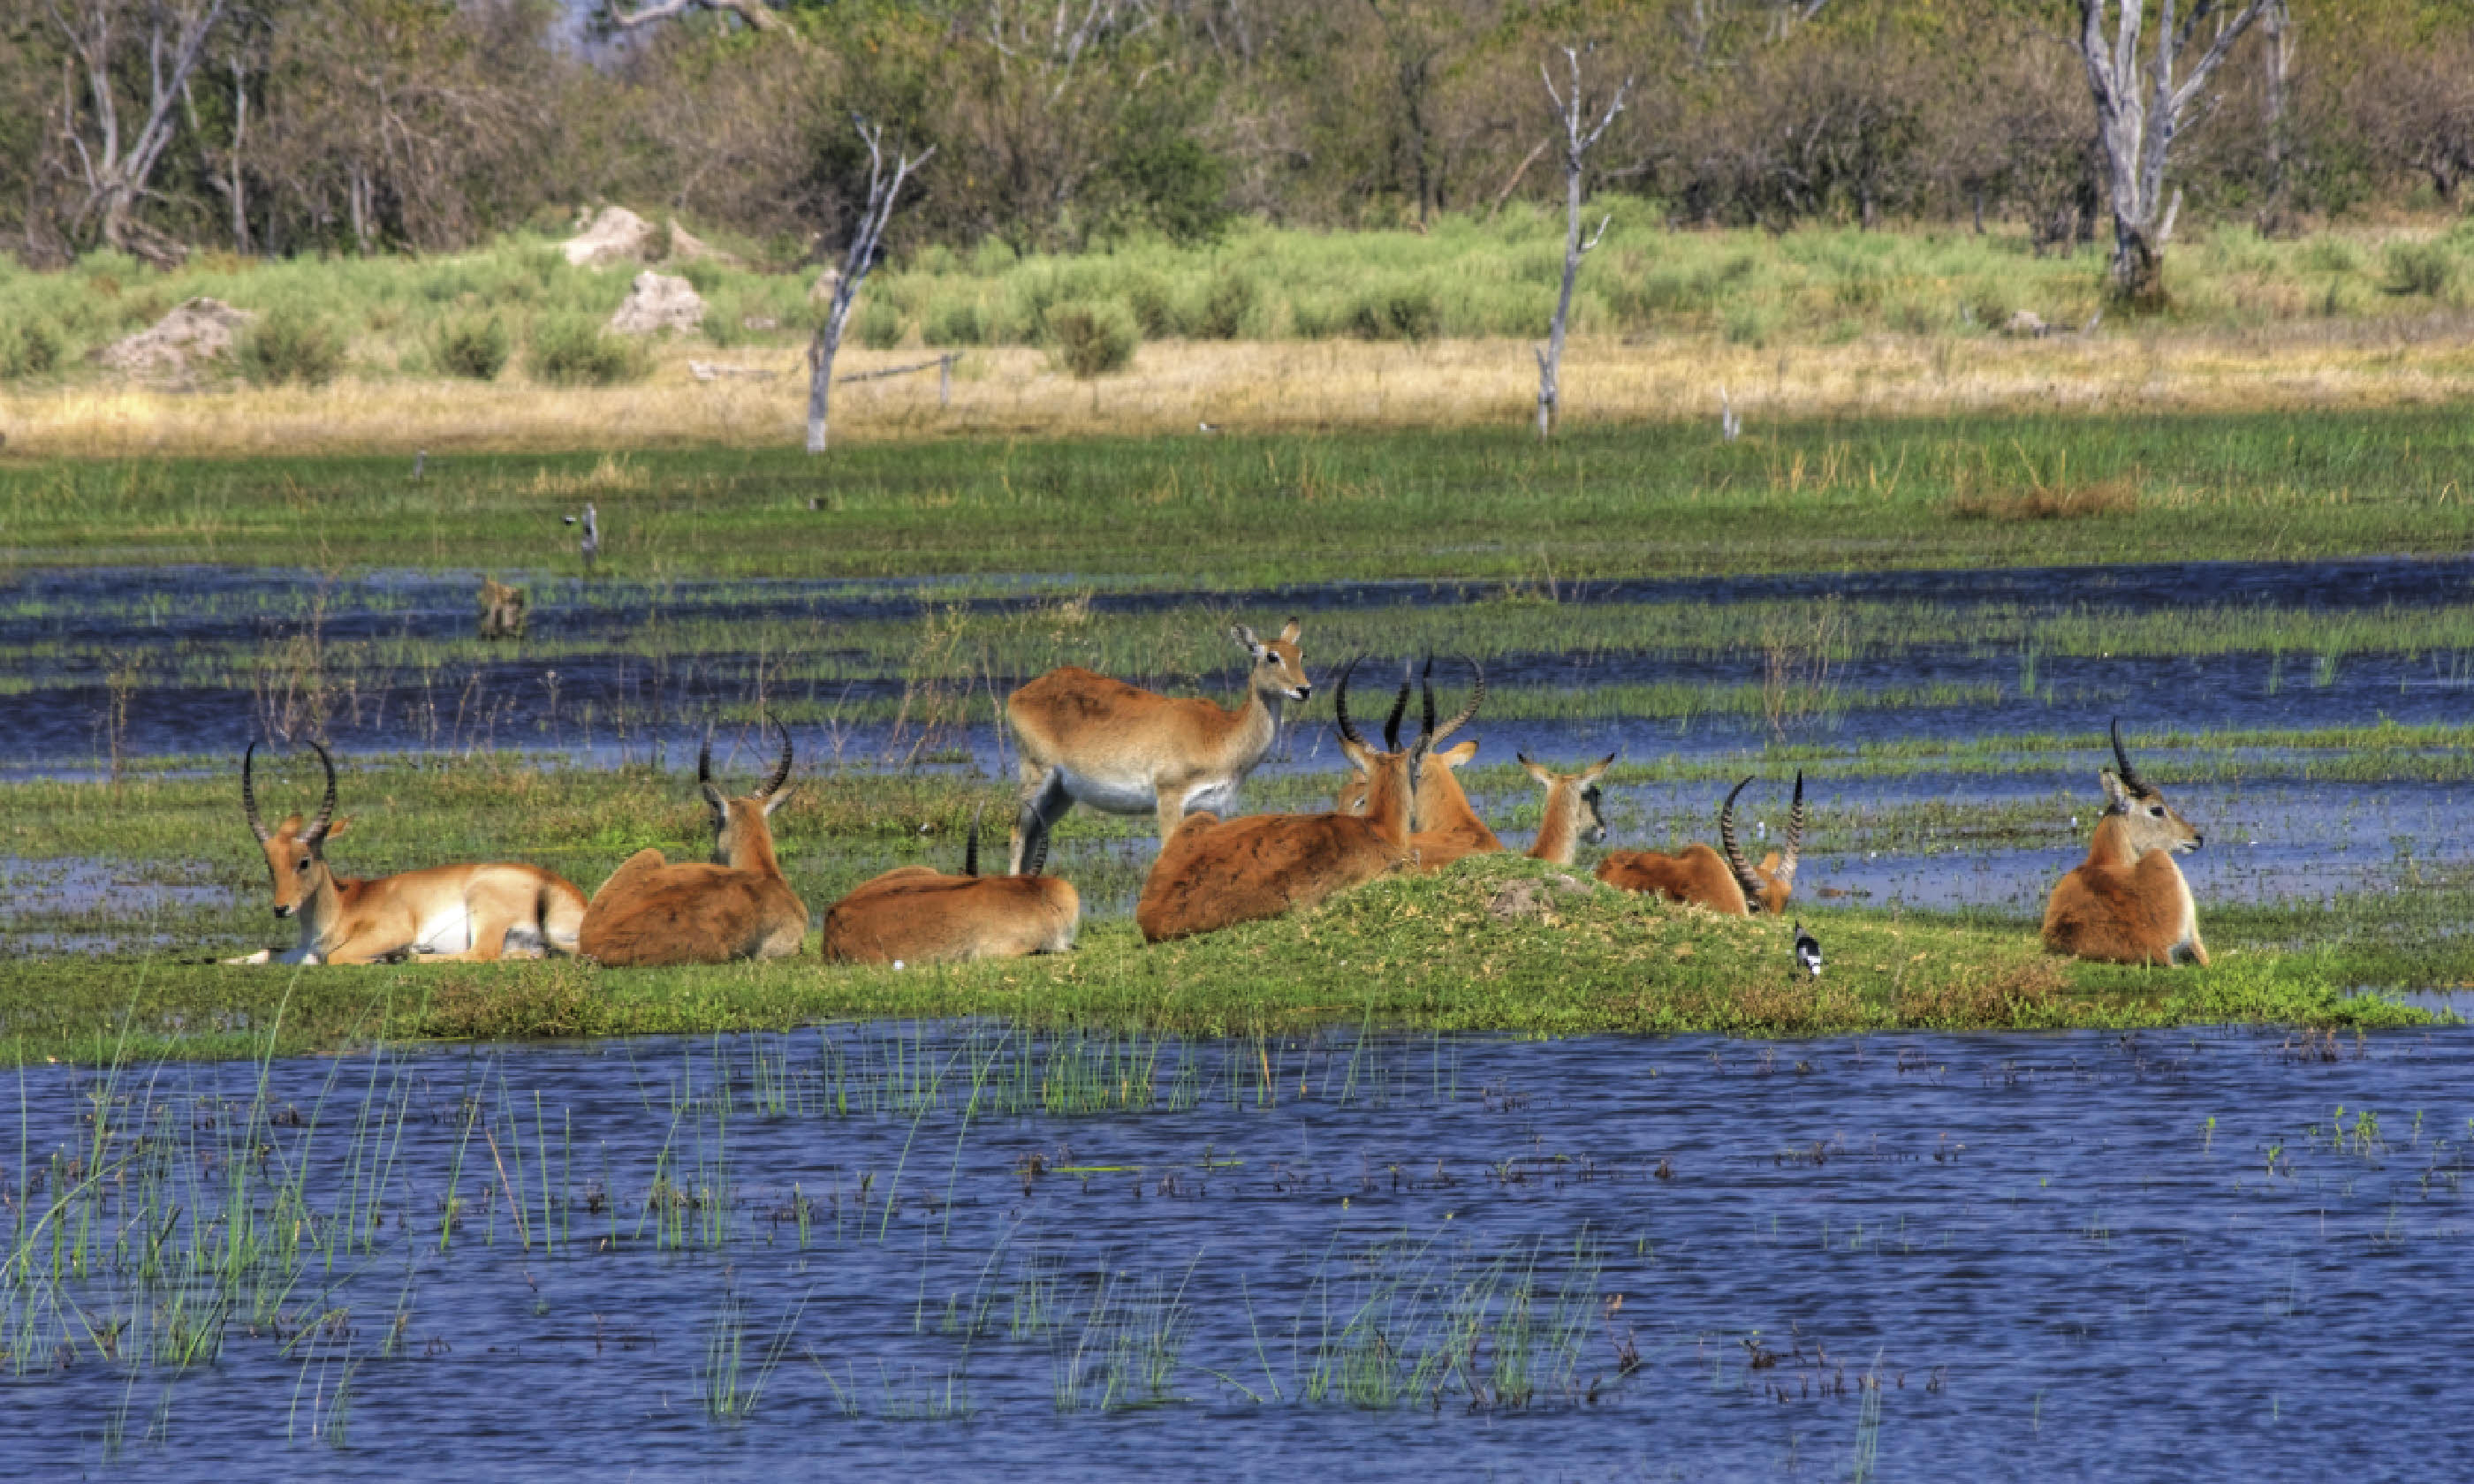 Antelopes lechwe (Shutterstock)